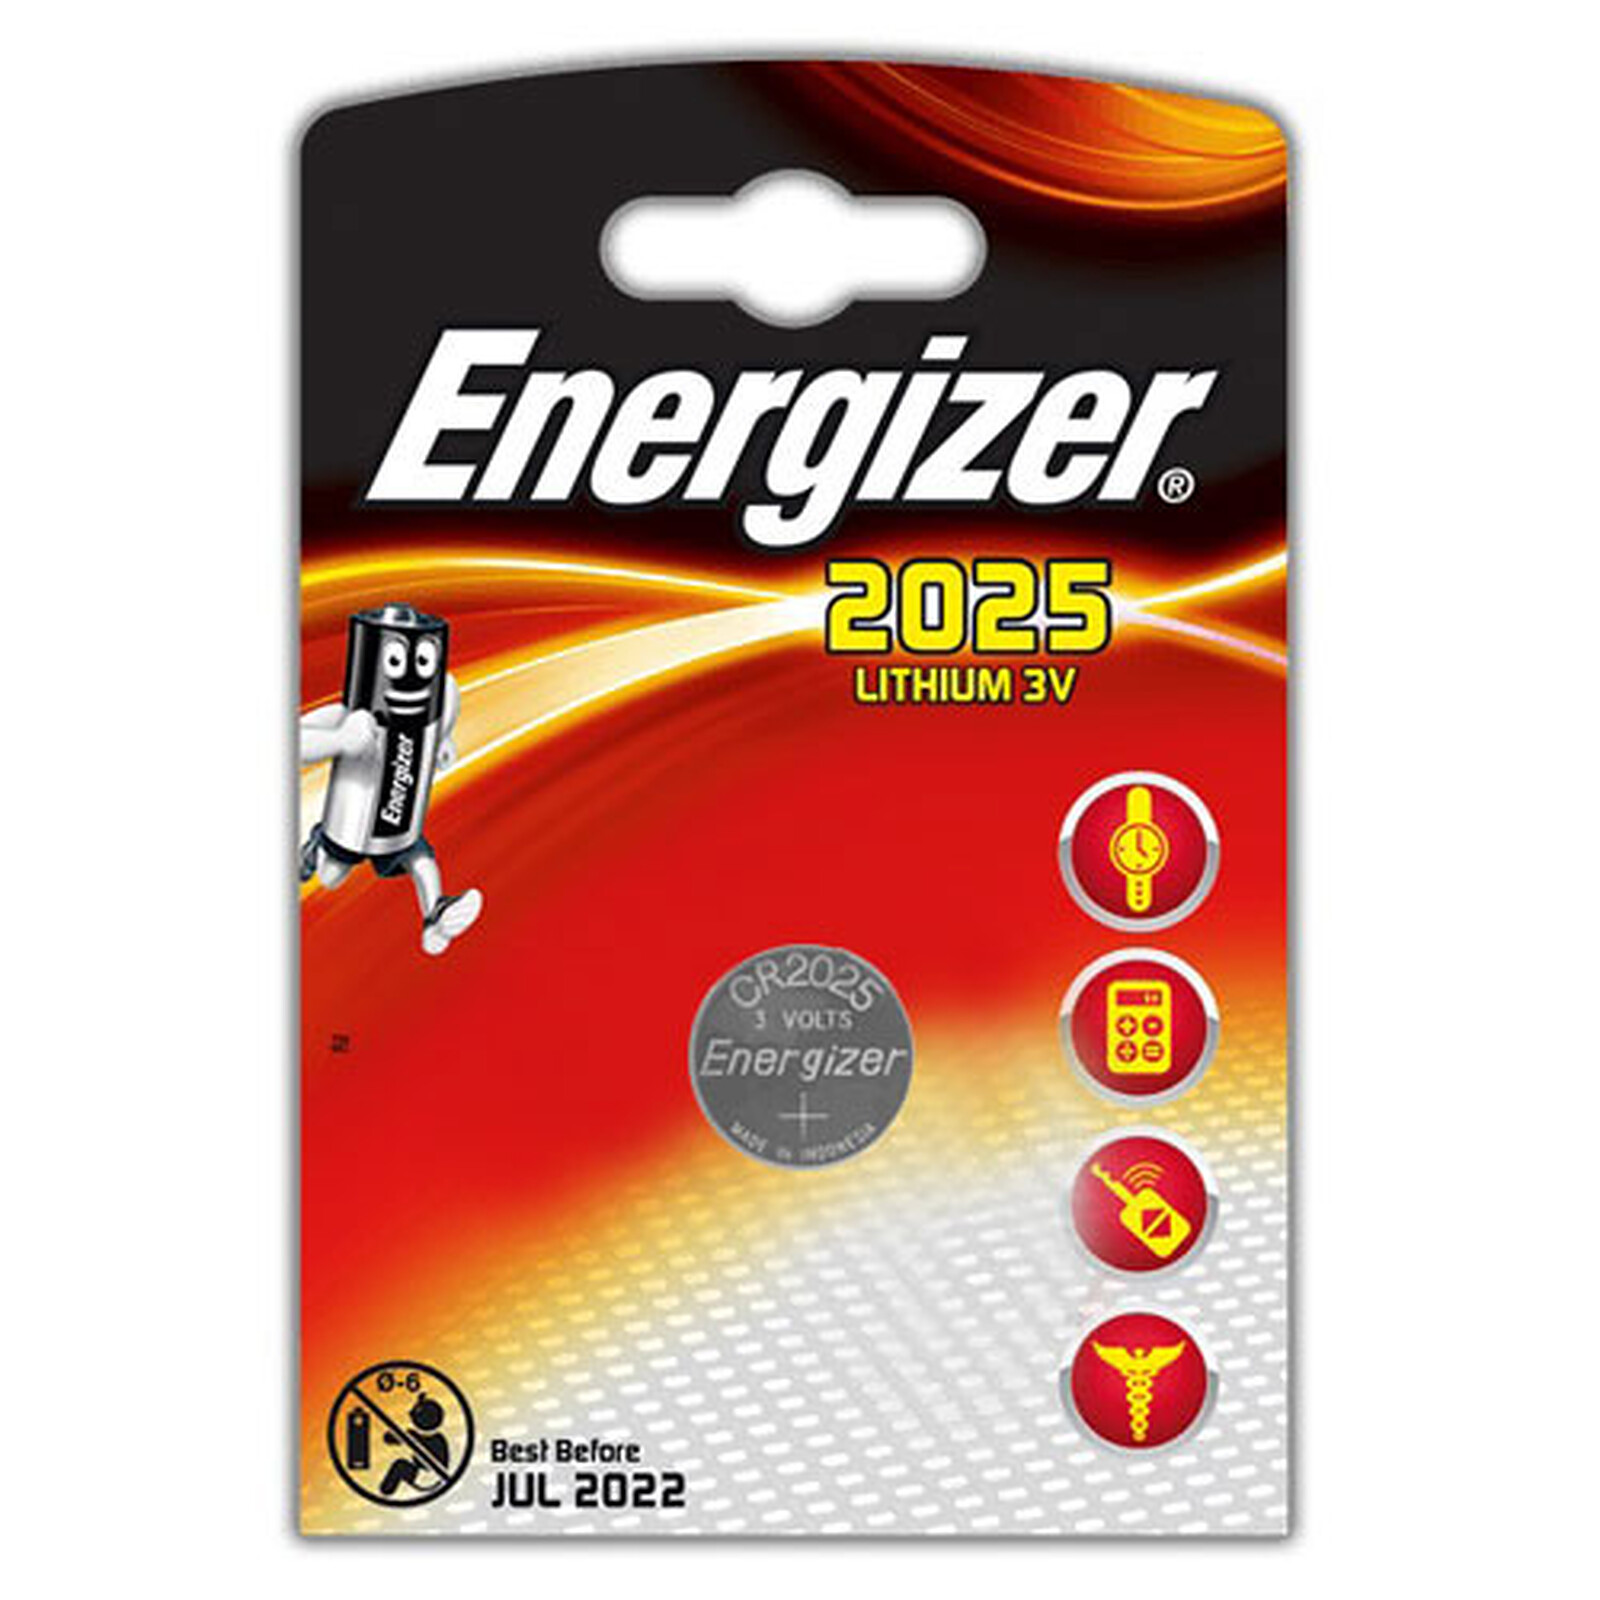 Energizer Pila de botón Miniature Lithium CR2025 3V 163 mAh no recargable  Pack 2 unid - Pilas Desechables Kalamazoo